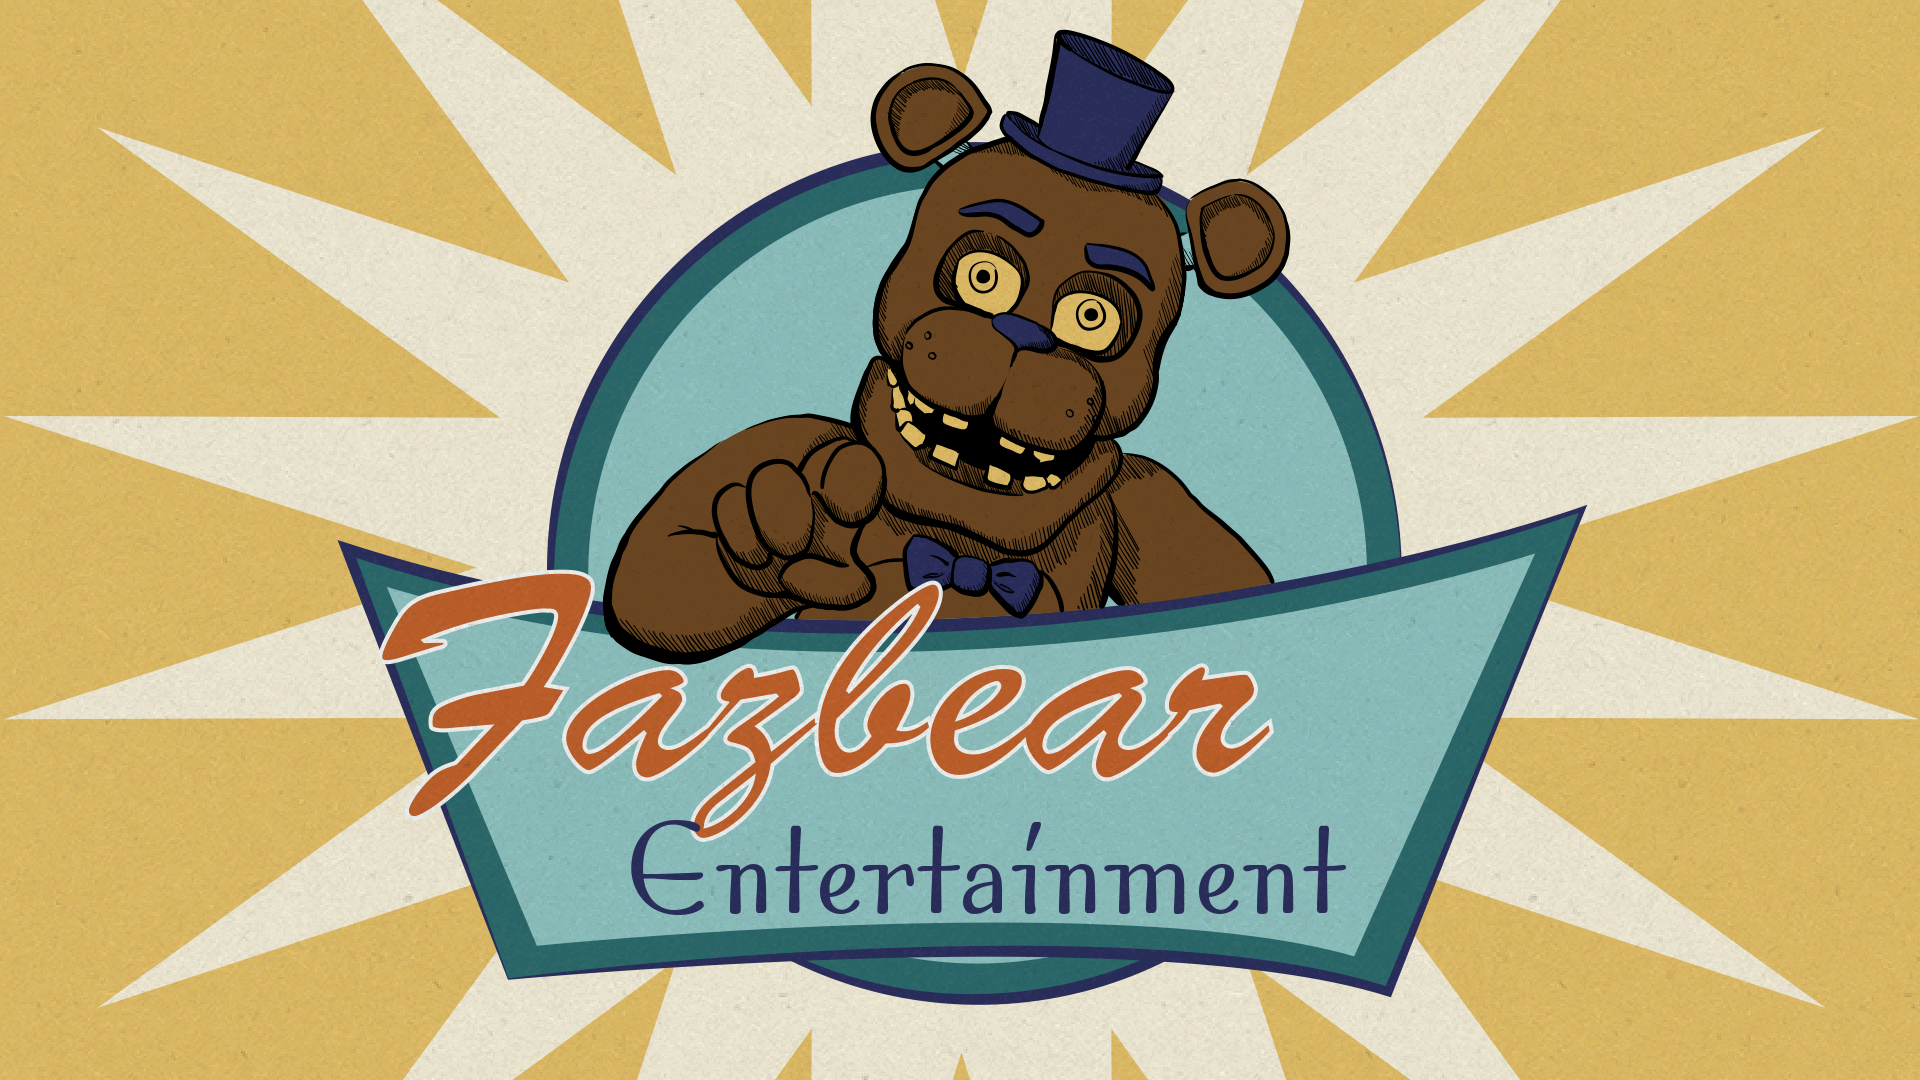 Freddy Fazbear - Five Nights at Freddy's Plus Greeting Card for